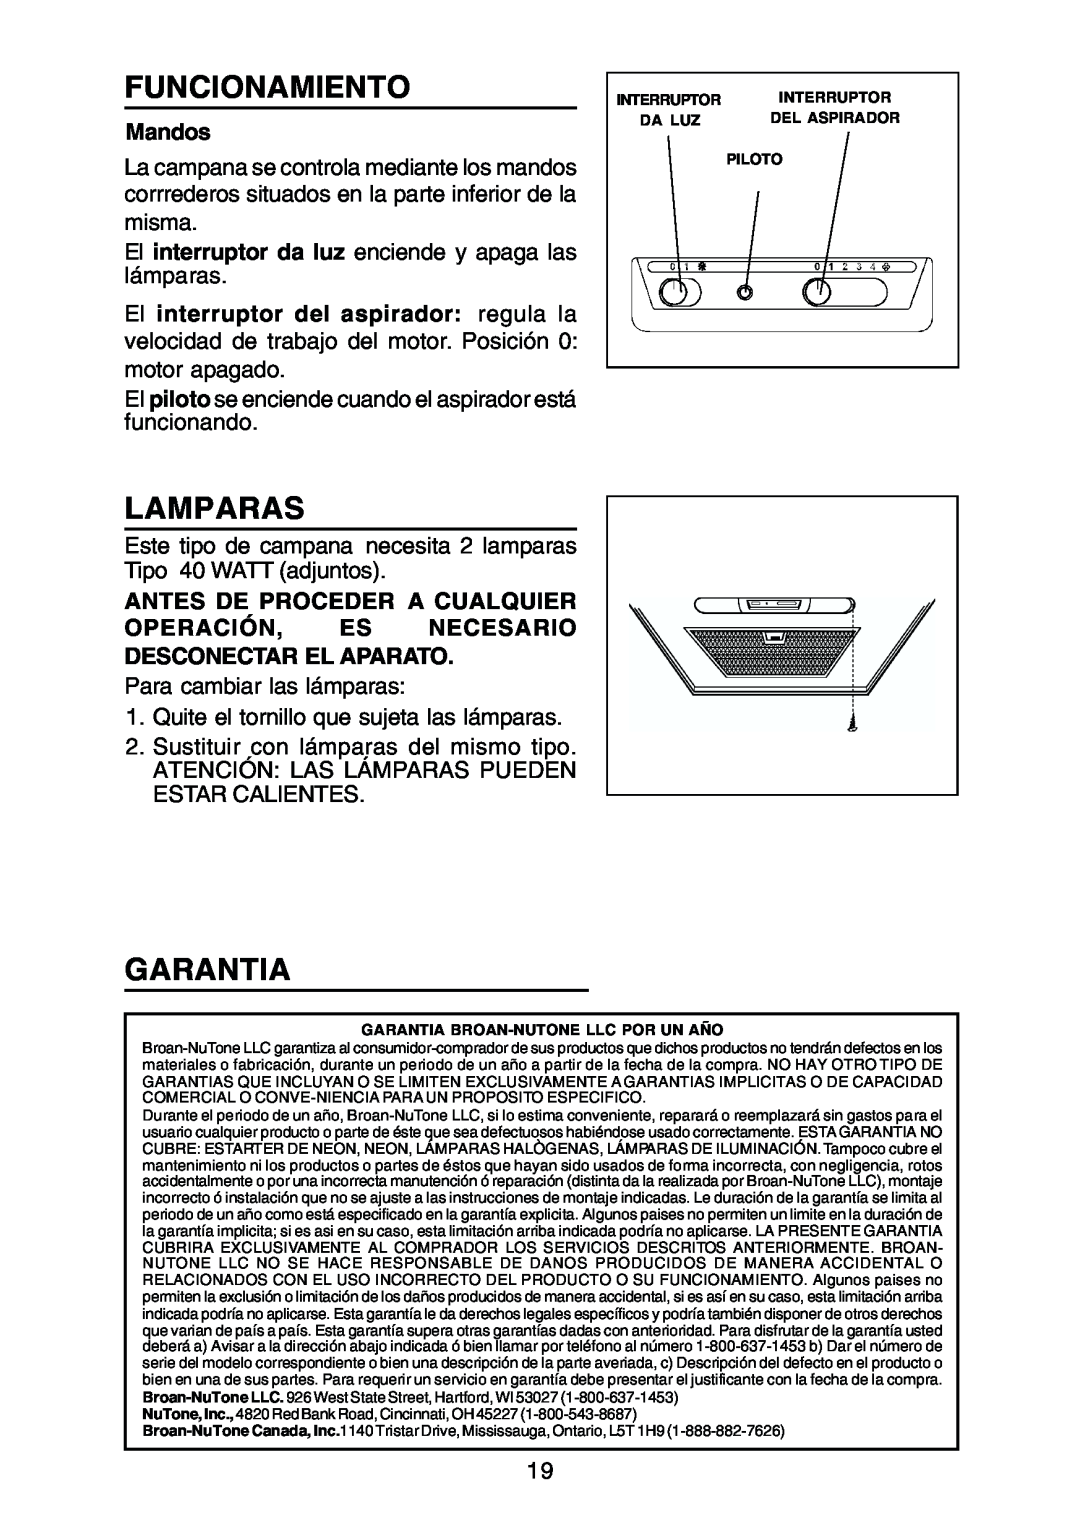 Rangemaster RM50000 Series manual Funcionamiento, Lamparas, Garantia, Mandos, El interruptor del aspirador regula la 